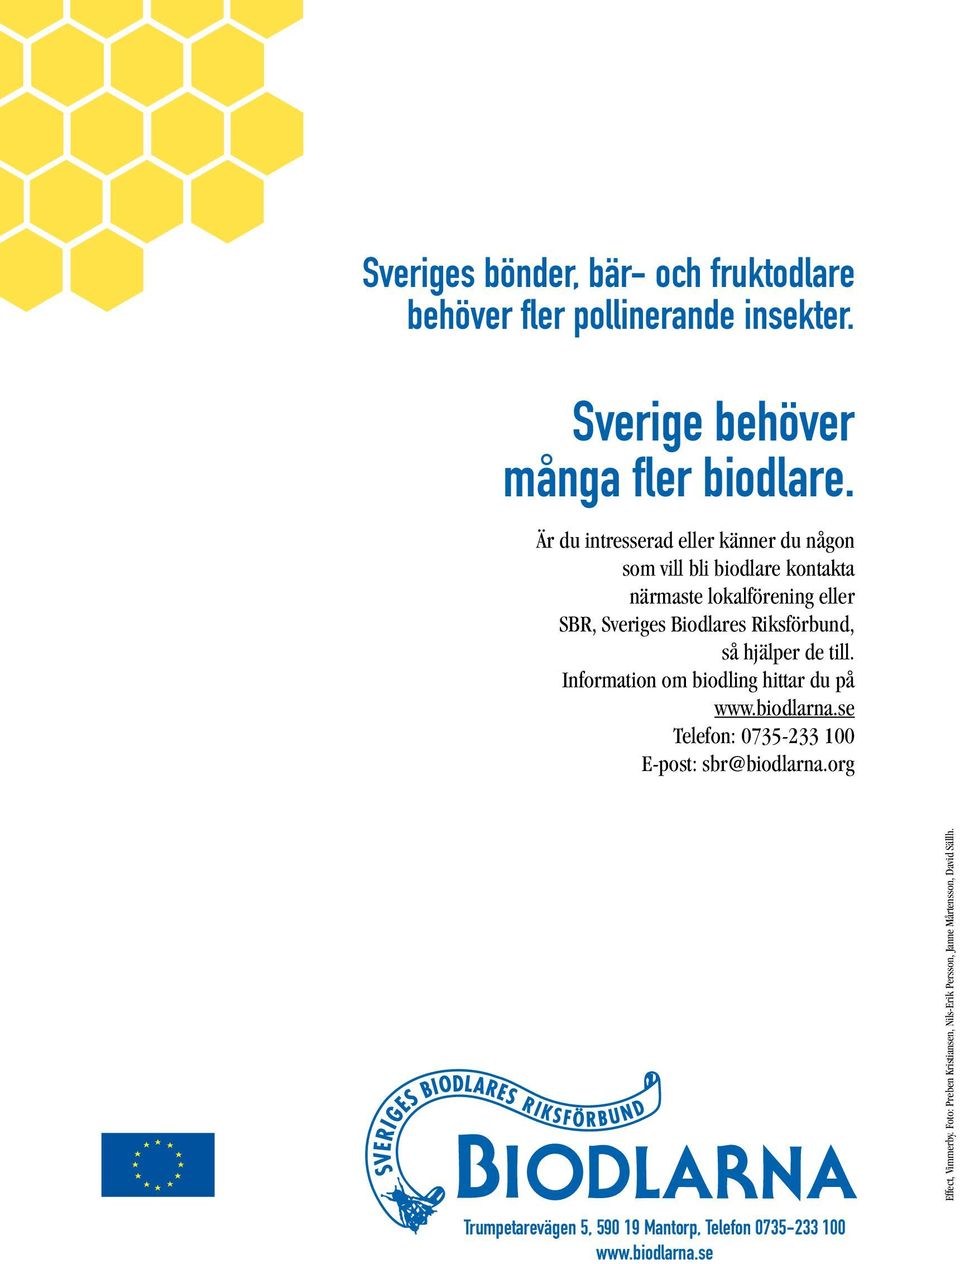 Riksförbund, så hjälper de till. Information om biodling hittar du på www.biodlarna.se Telefon: 0735-233 100 E-post: sbr@biodlarna.